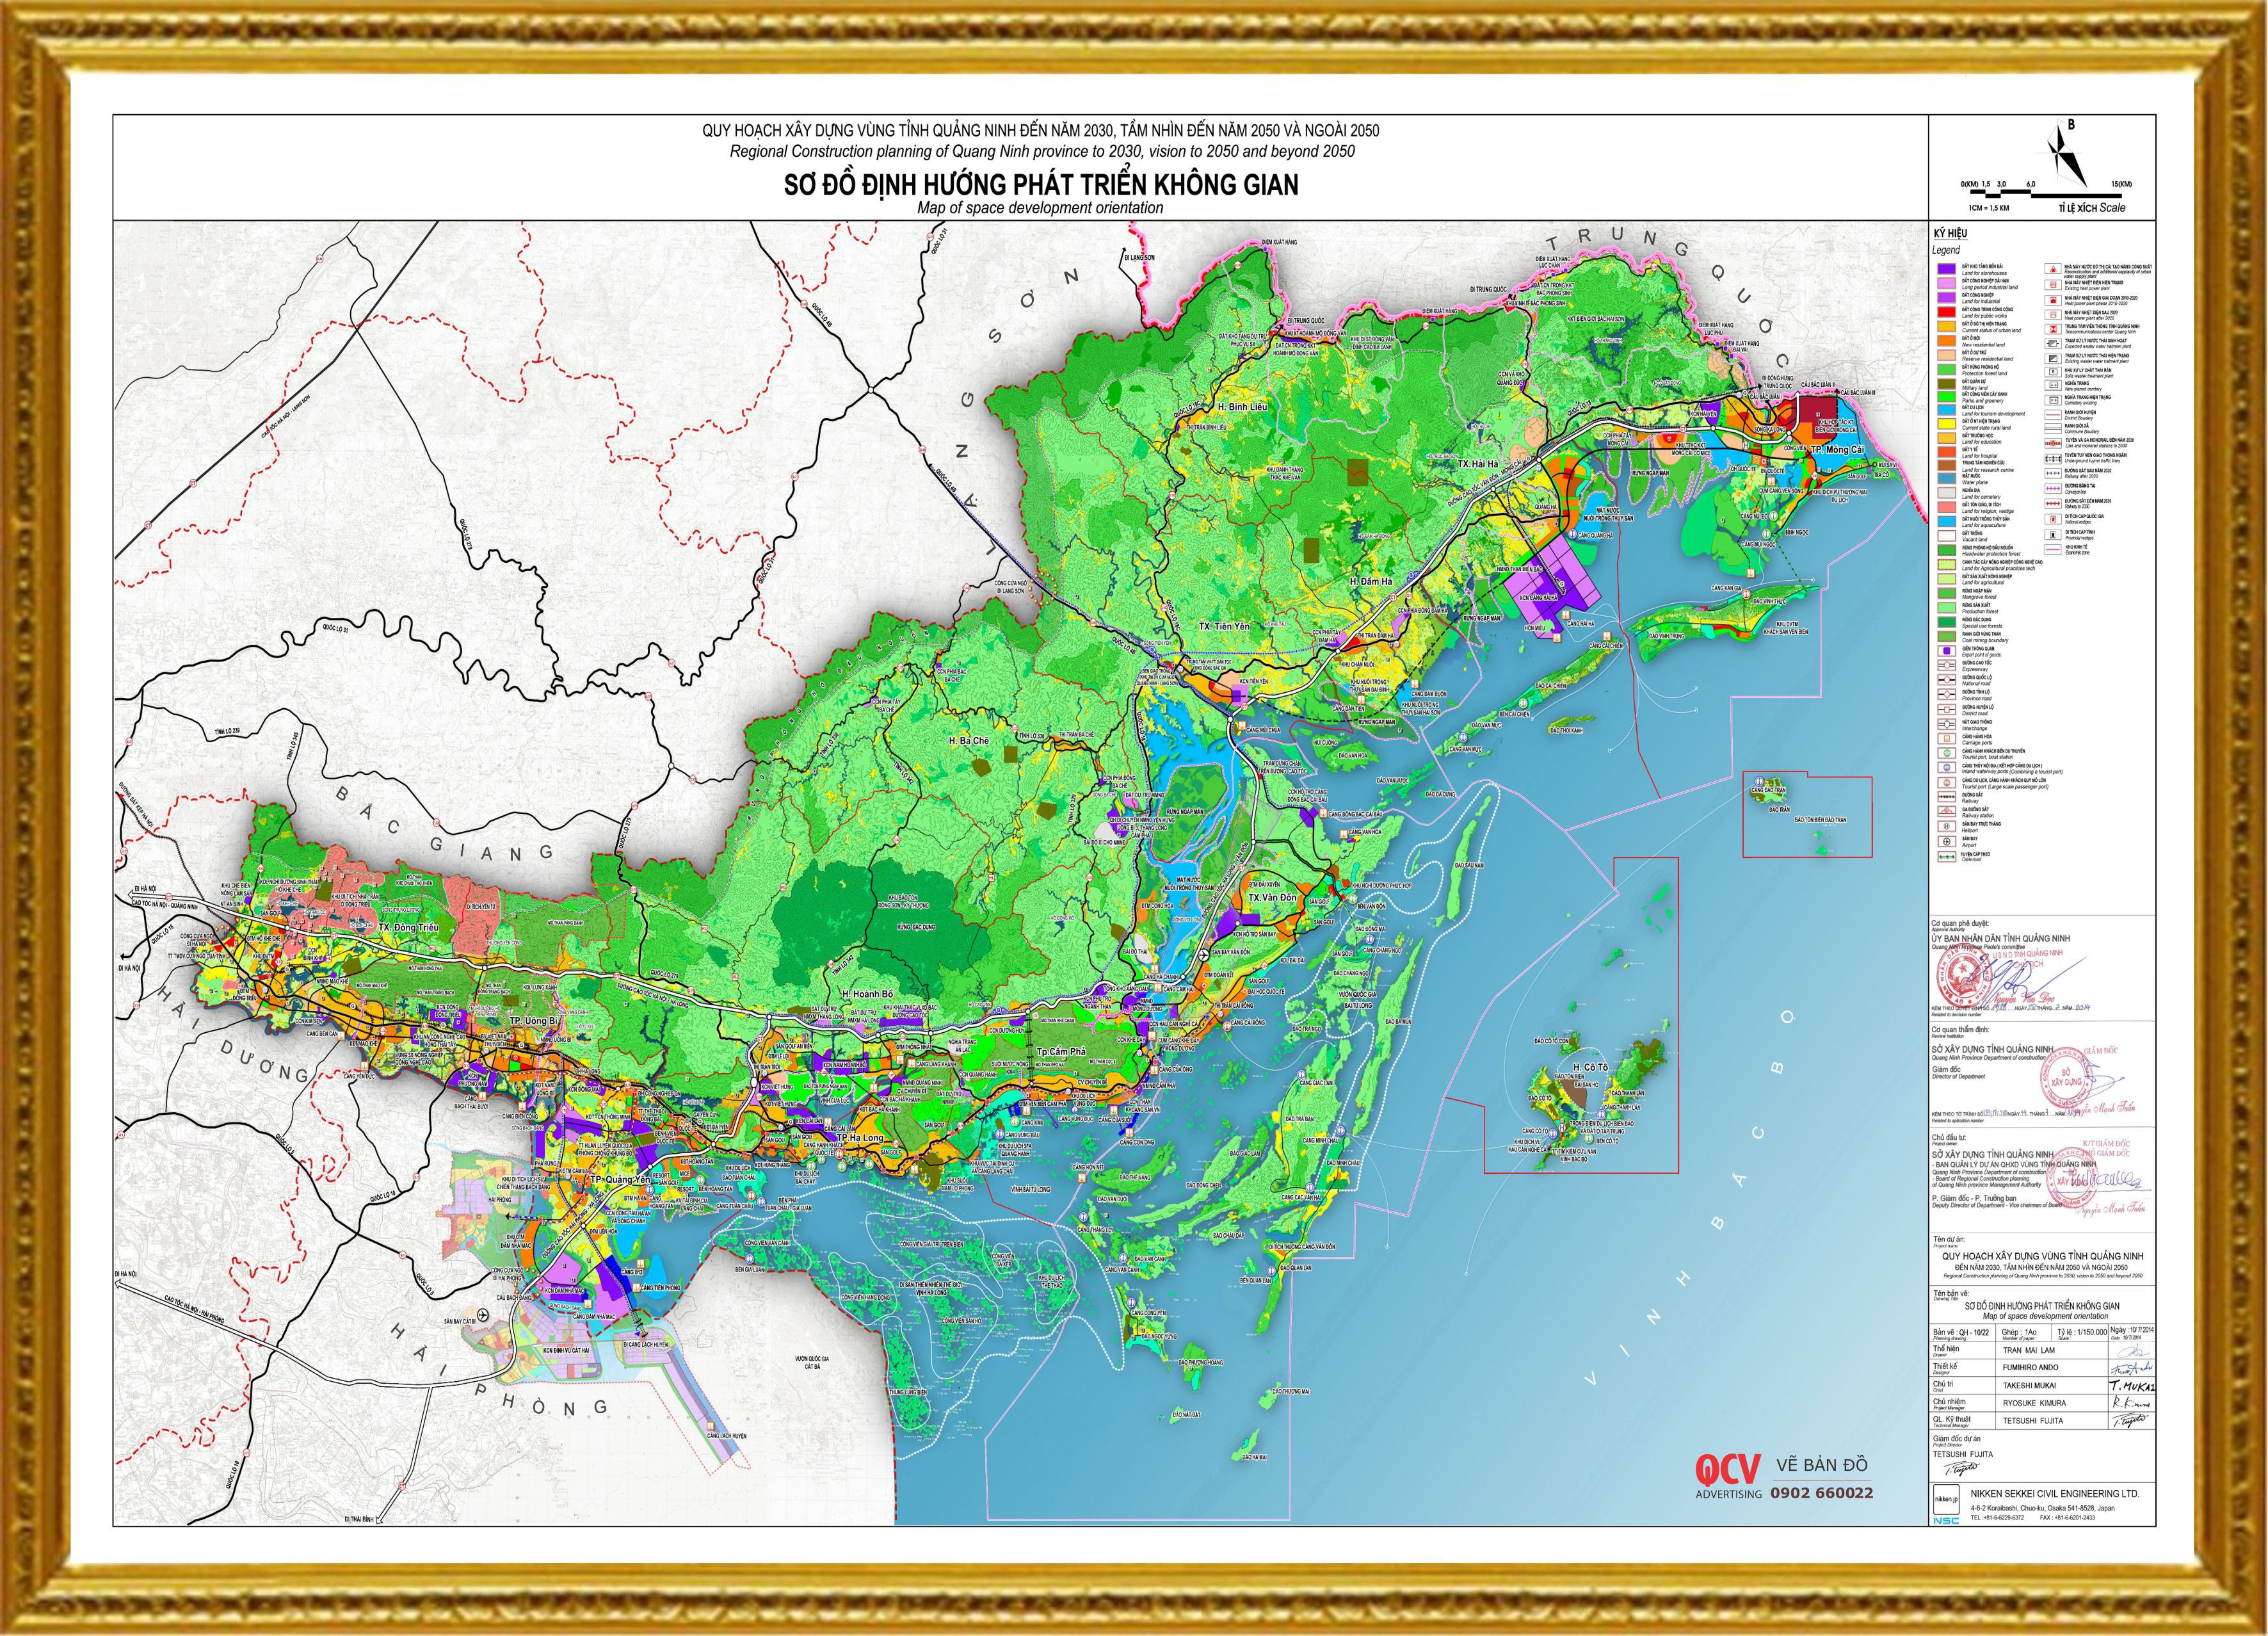 Bản Đồ Hành chính Tỉnh Quảng Ninh giúp bạn nắm rõ về địa hình, cũng như cách thức phân chia hành chính của vùng. Cùng xem qua hình ảnh đẹp và tìm hiểu về những điểm đến đặc sắc của Quảng Ninh.